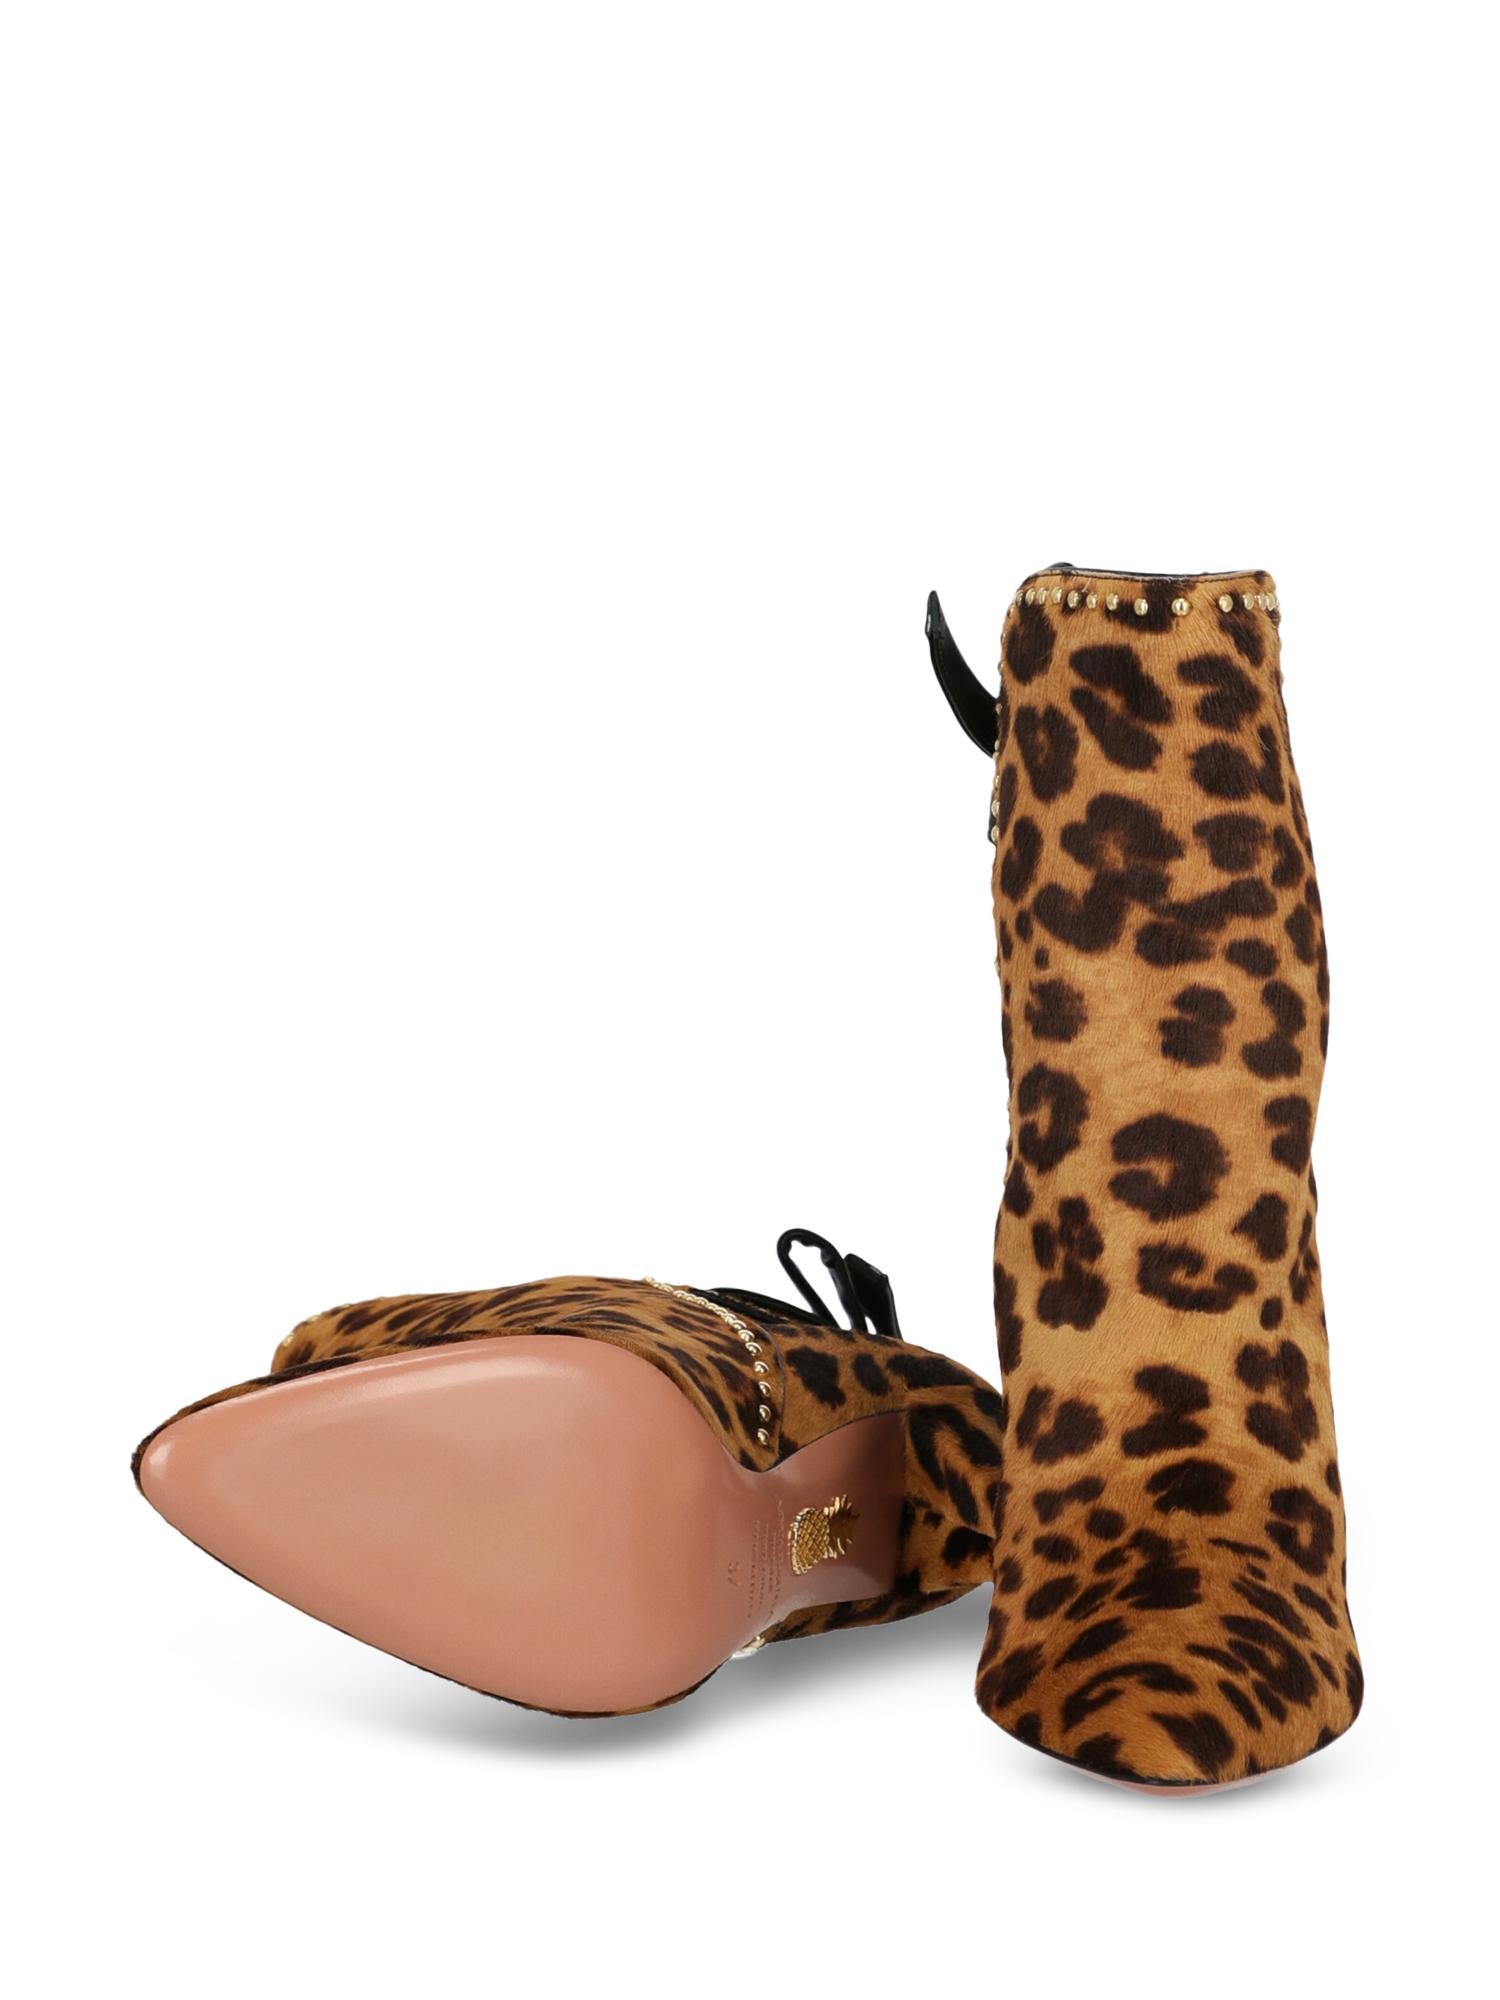 Aquazzurra Women's Ankle Boots Multicolor Leather Size IT 37 For Sale 1